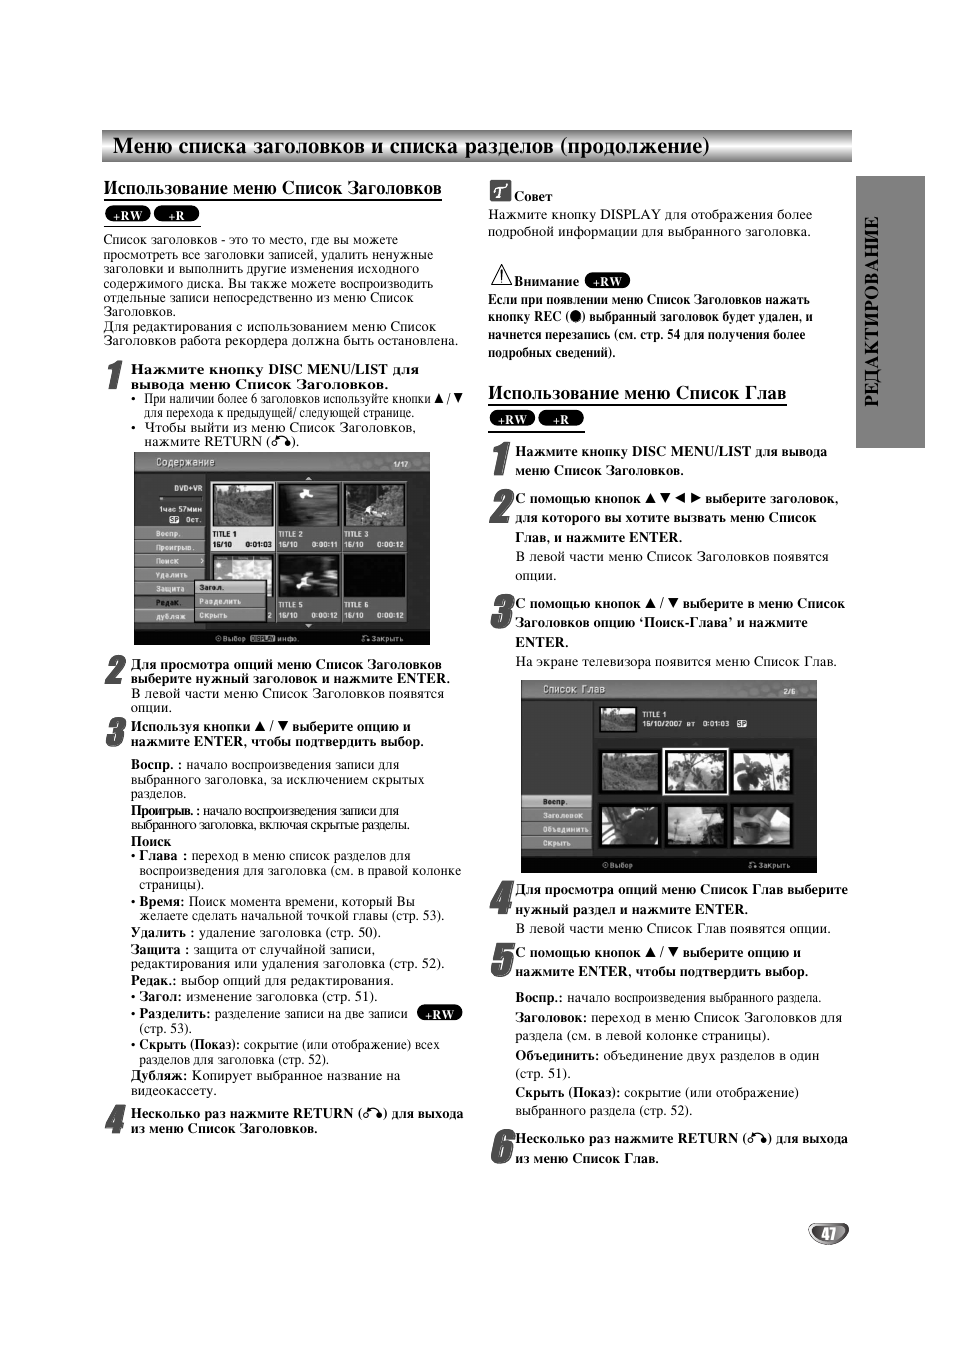 Использование меню список заголовков | Инструкция по эксплуатации LG DVR788 | Страница 47 / 60